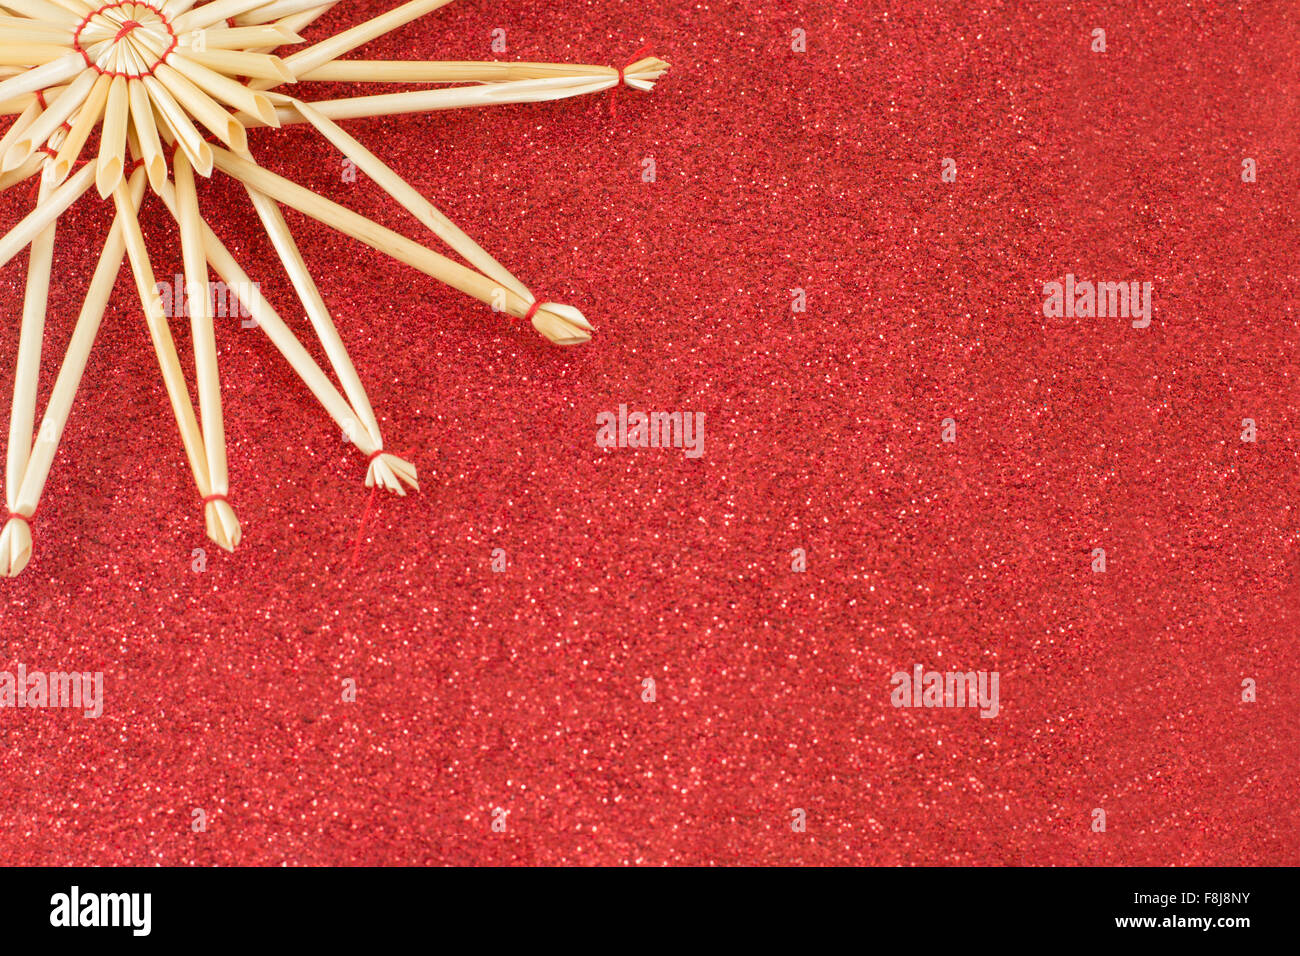 Madera de decoración en forma de estrella roja de fondo brillante Foto de stock